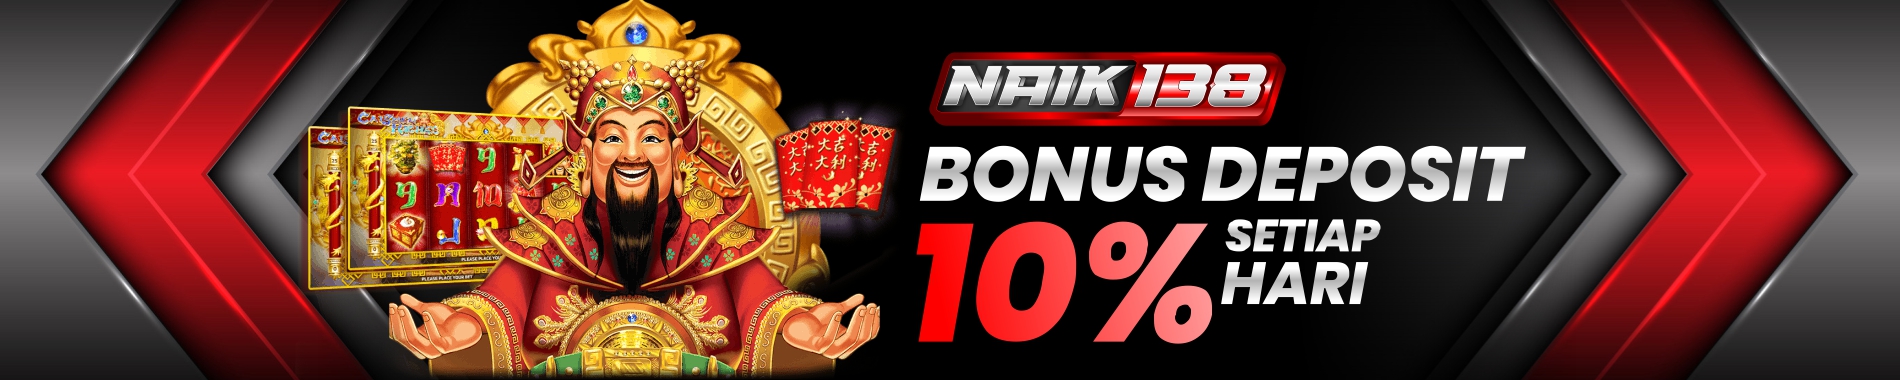 bonus deposit setiap hari 10%